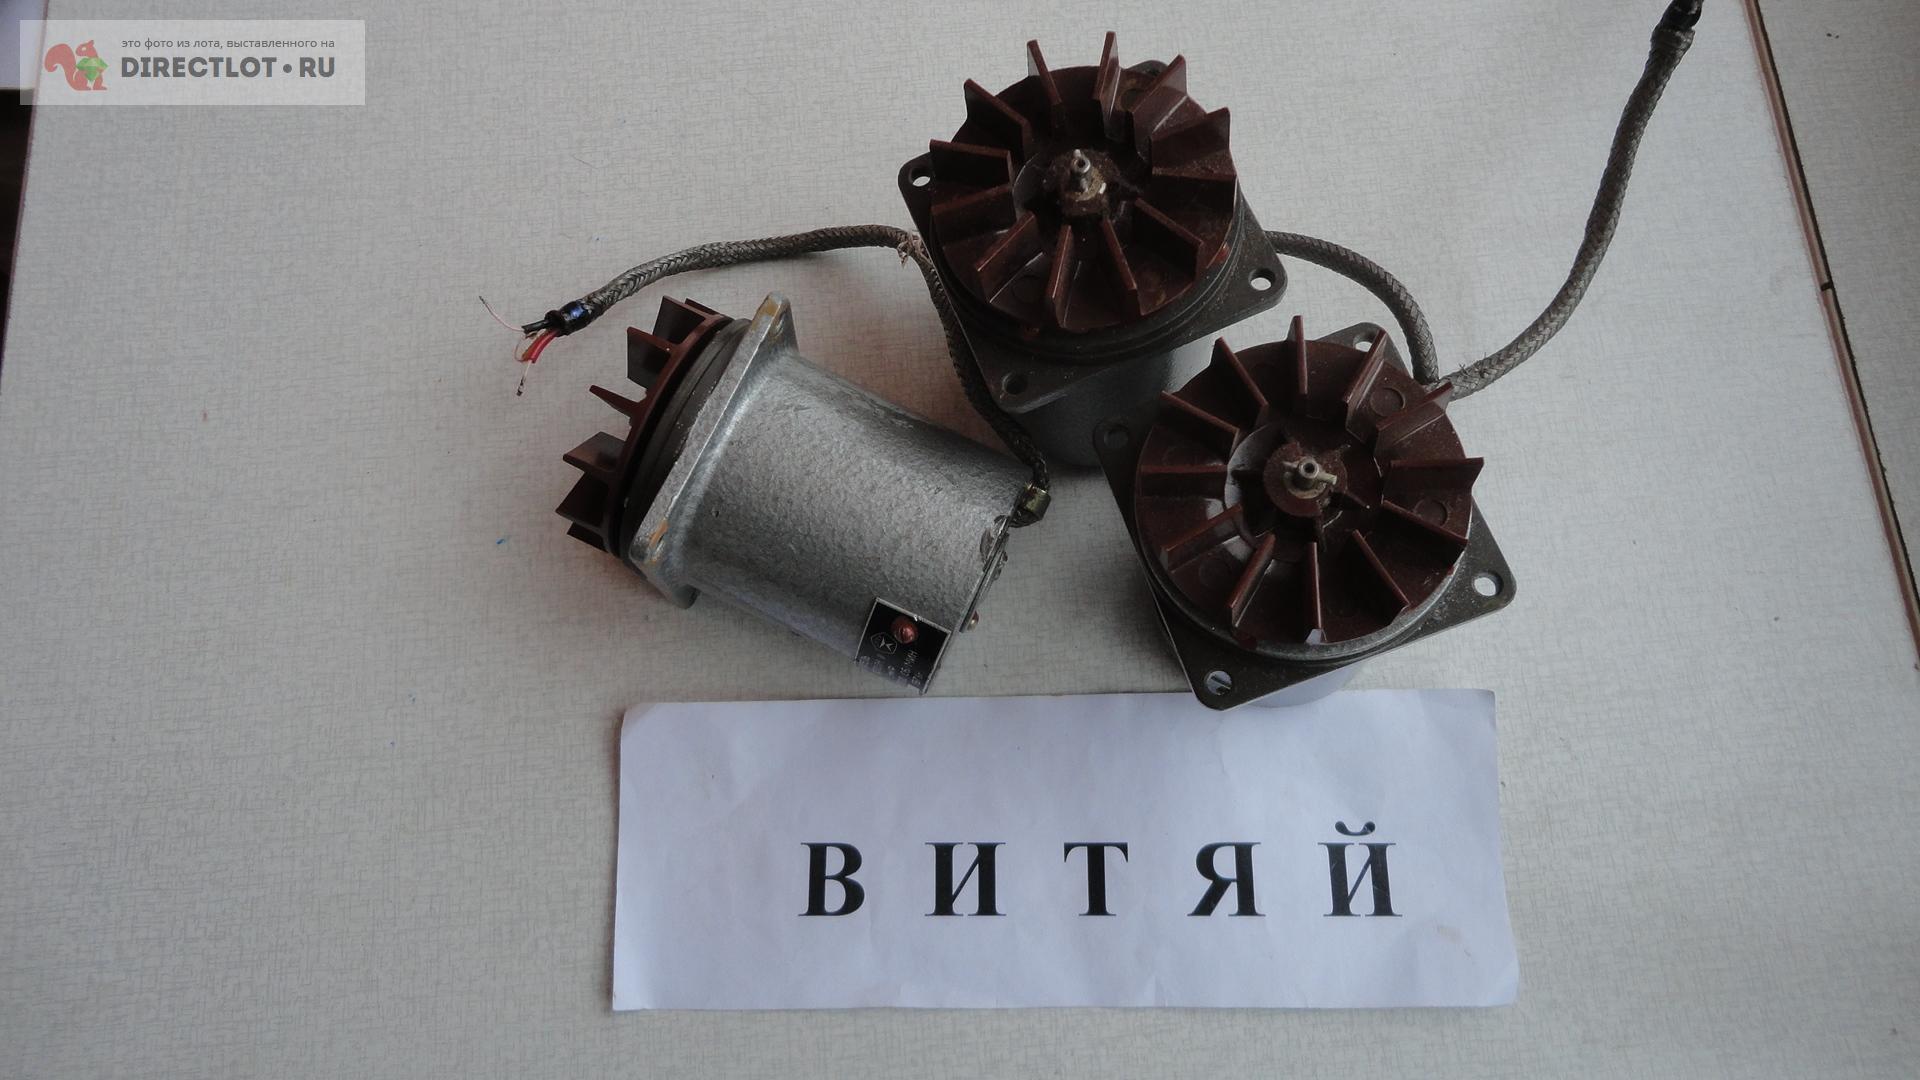 Электродвигатель тип Г-31АУ4 220В 3000об/мин.  в Ульяновске цена .